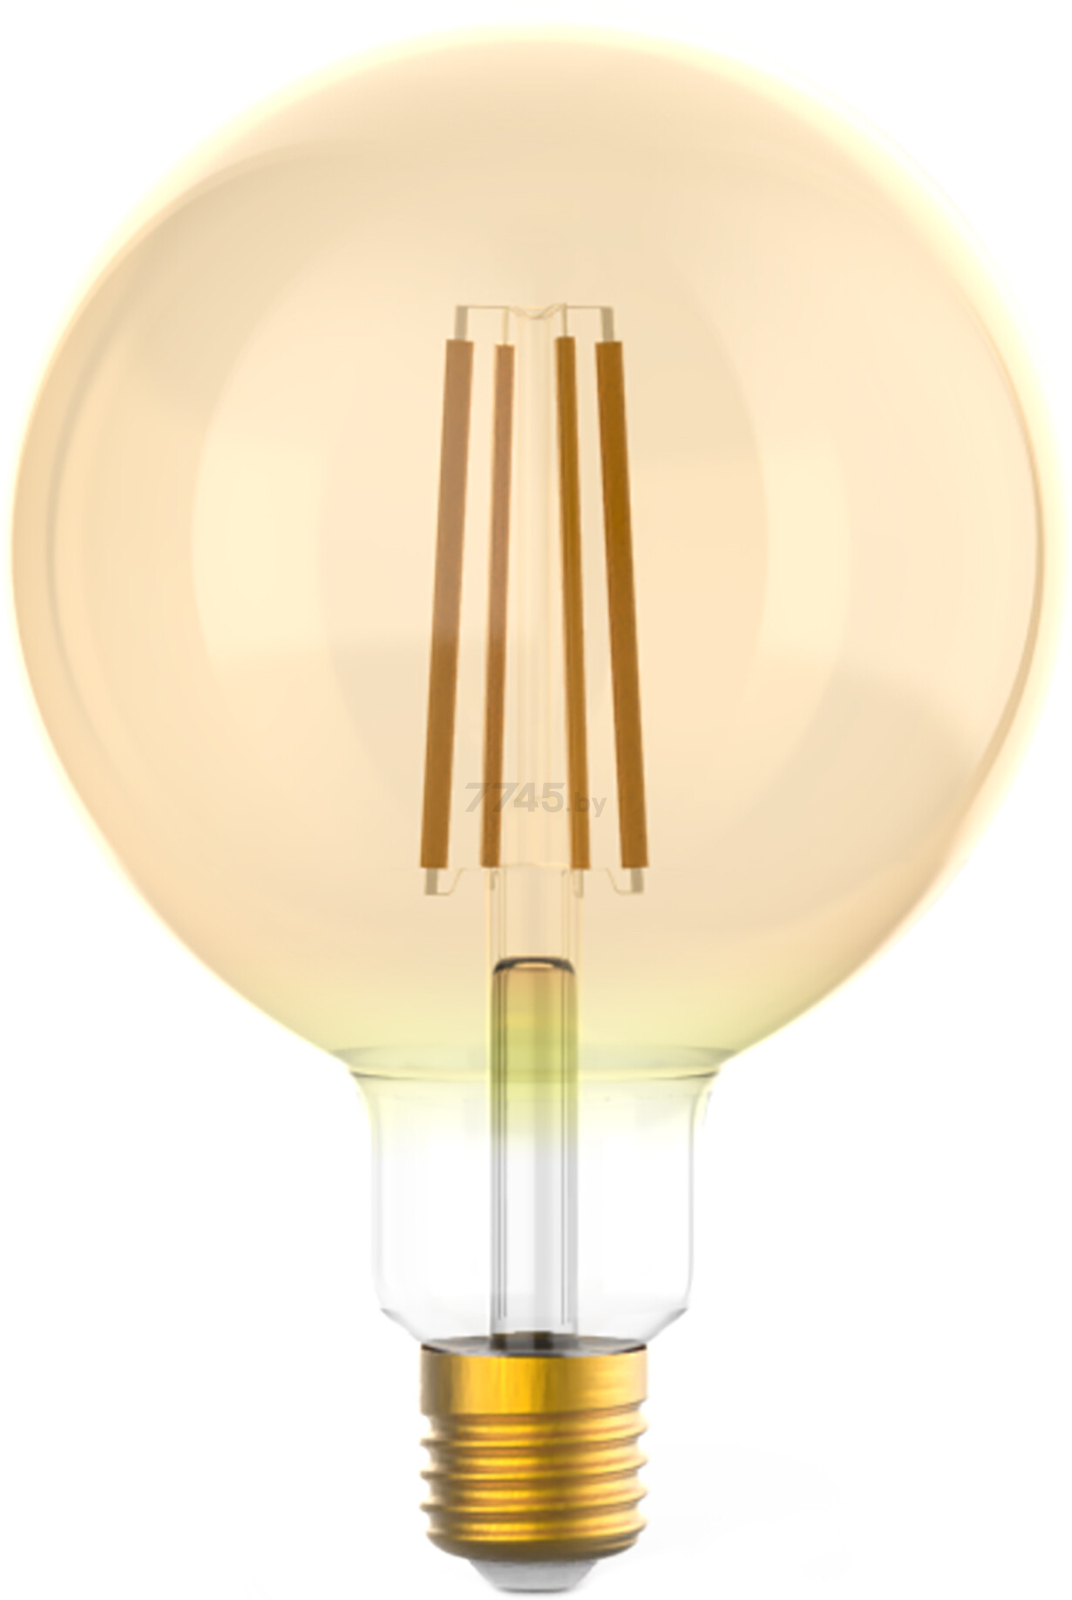 Лампа светодиодная филаментная Е27 GAUSS 10 Вт 2400К golden диммируемая (158802010-D)